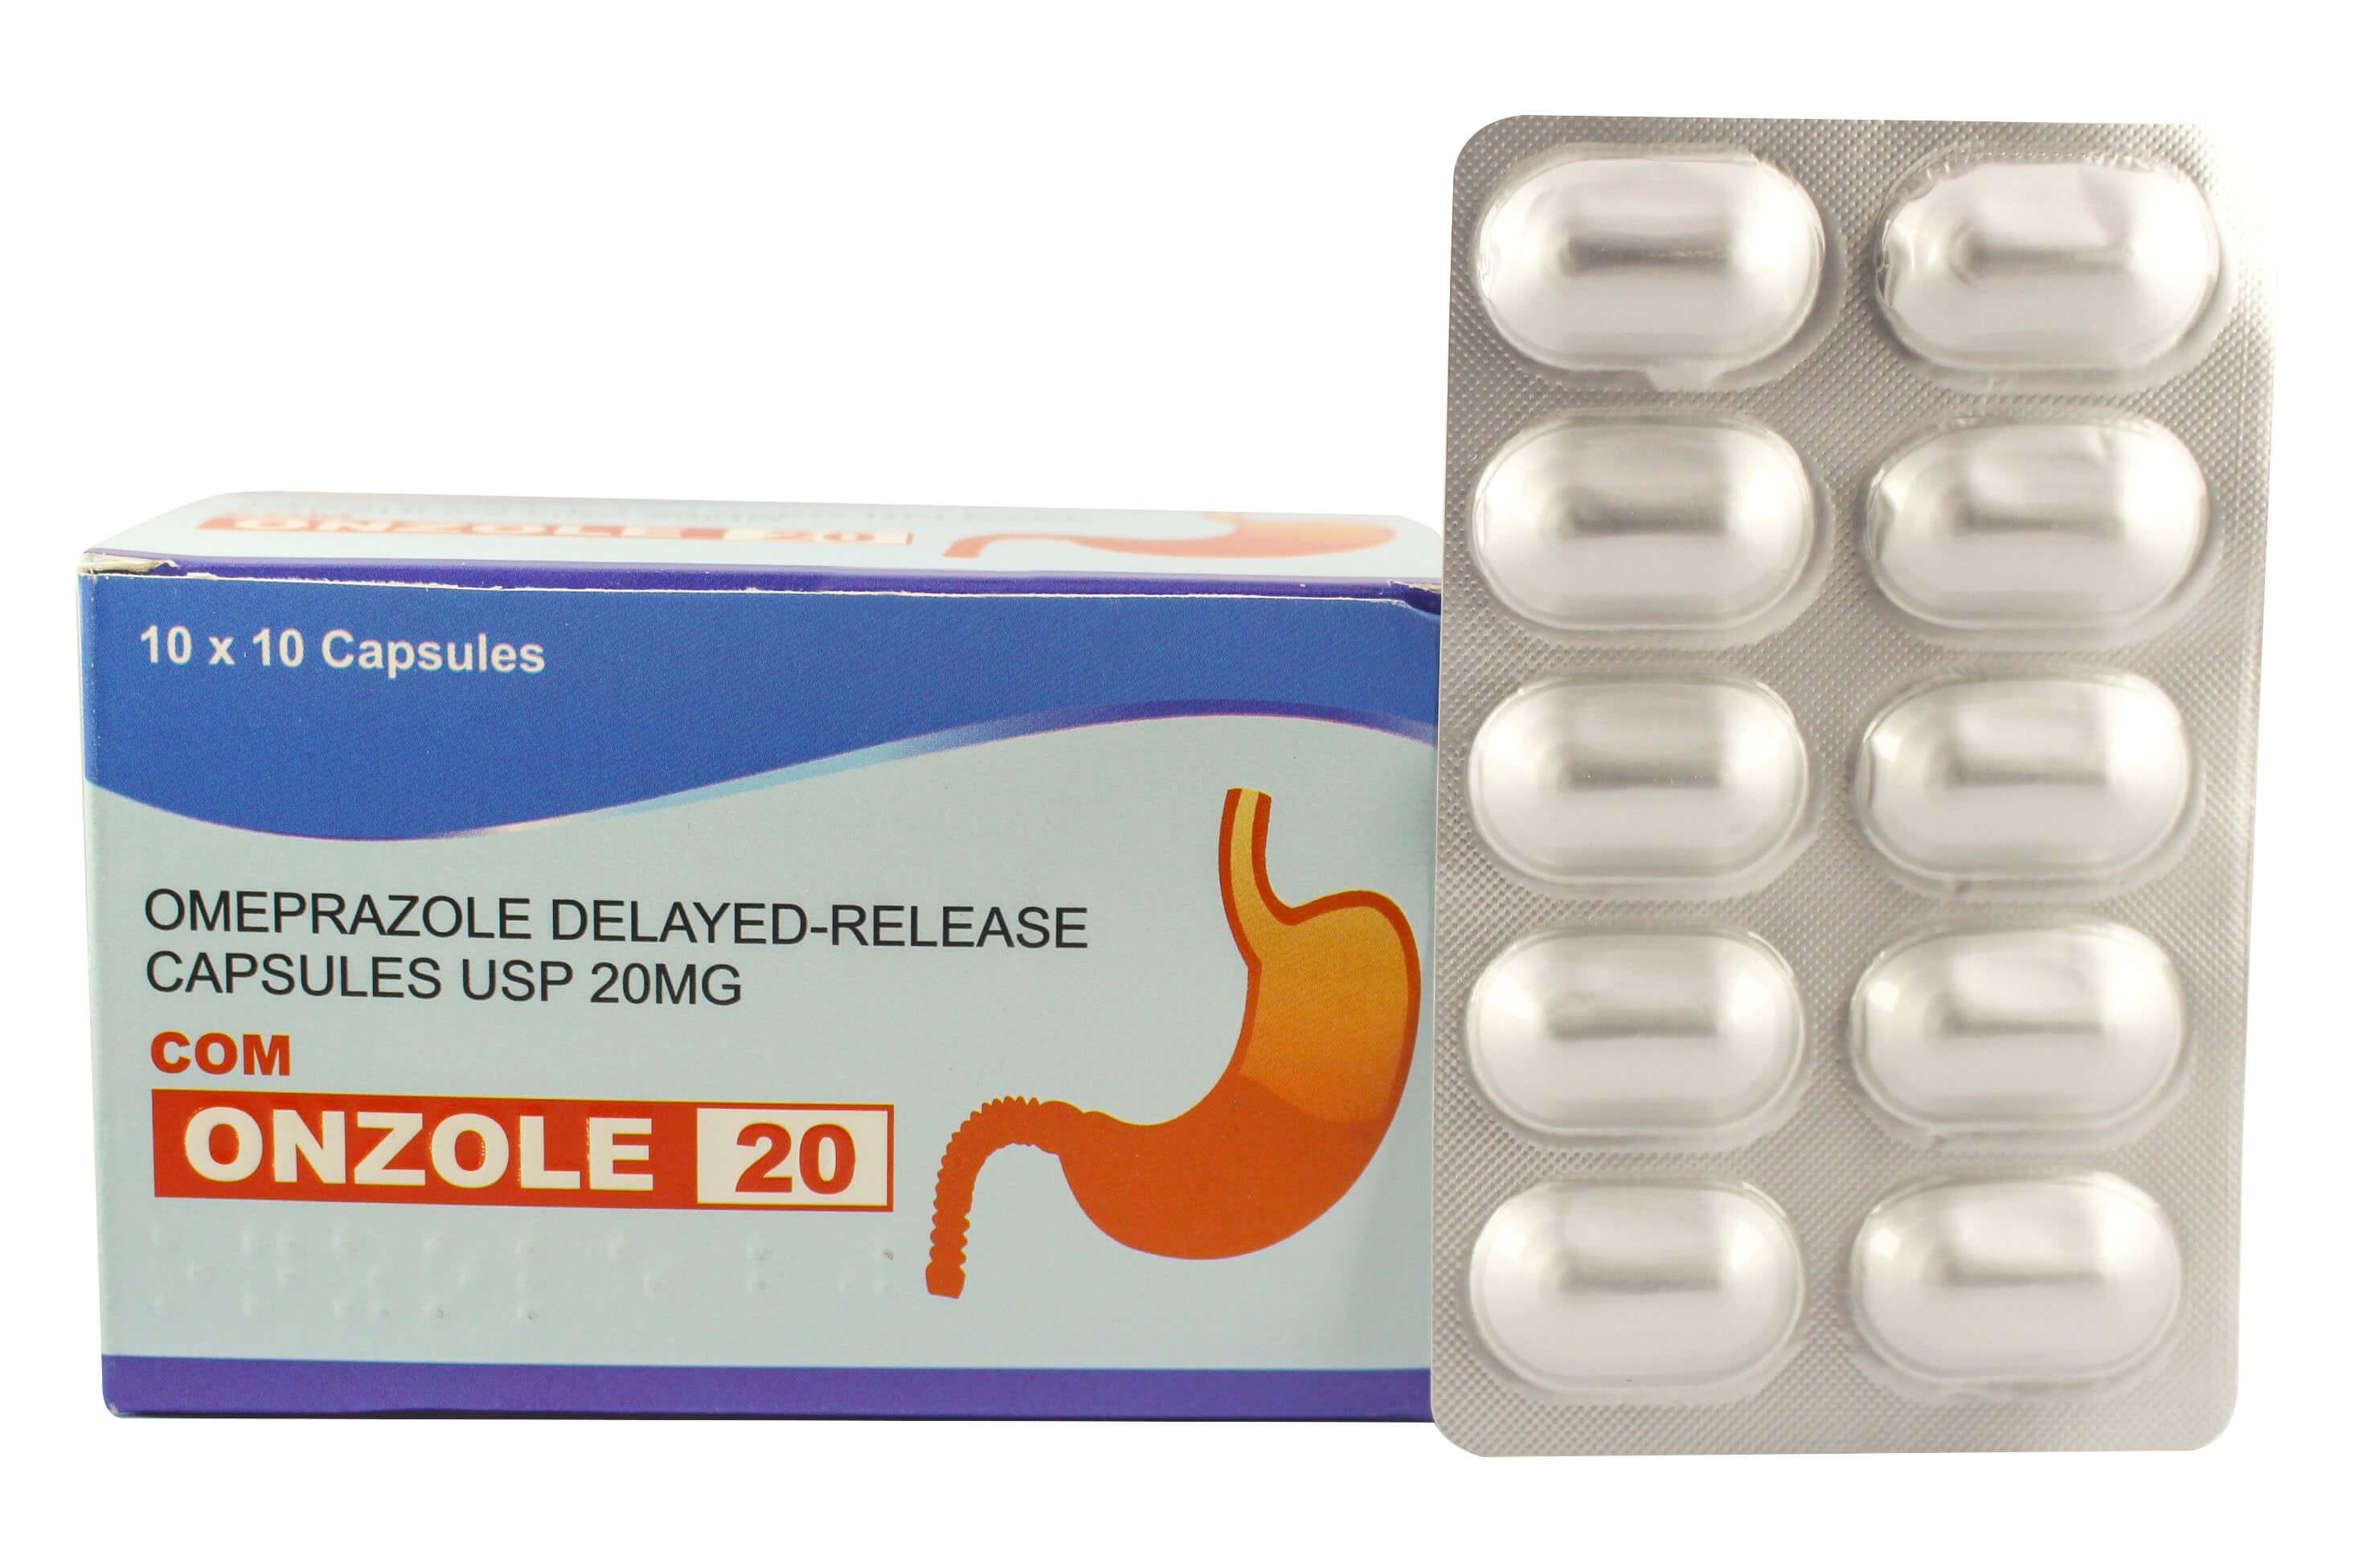 Com-onzole-20mg-capsules